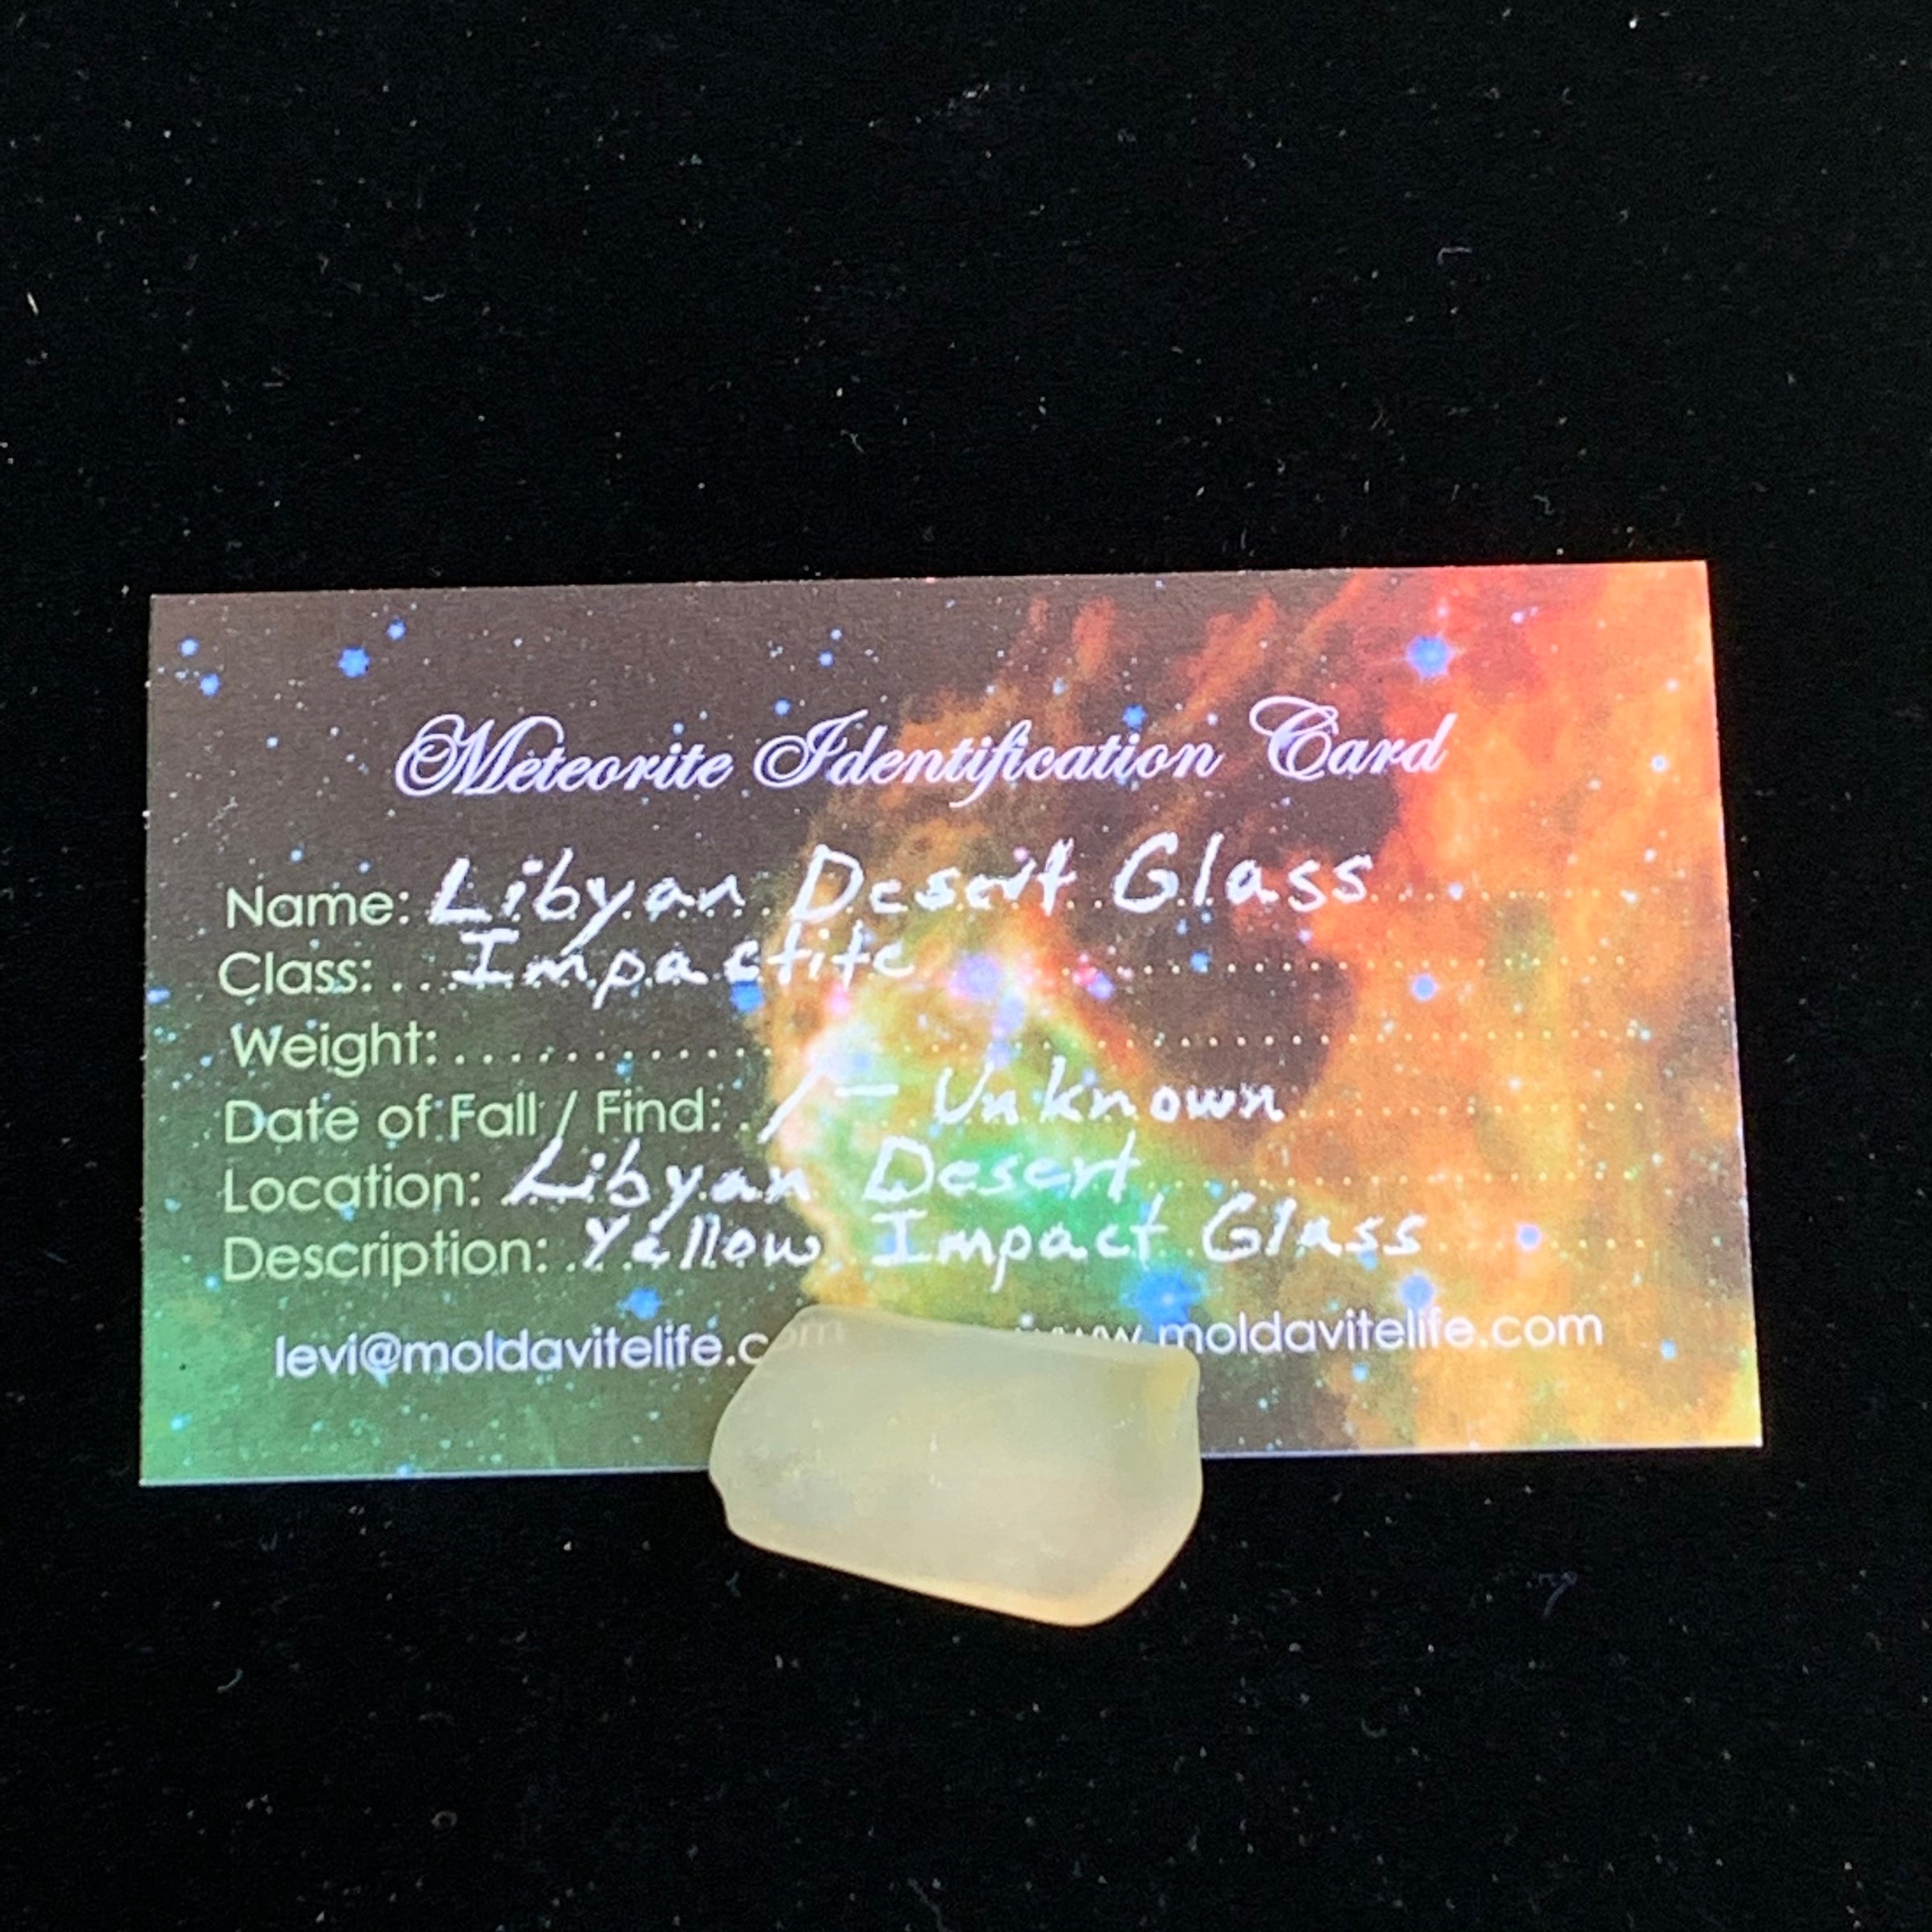 Libyan Desert Glass 4.4 grams-Moldavite Life